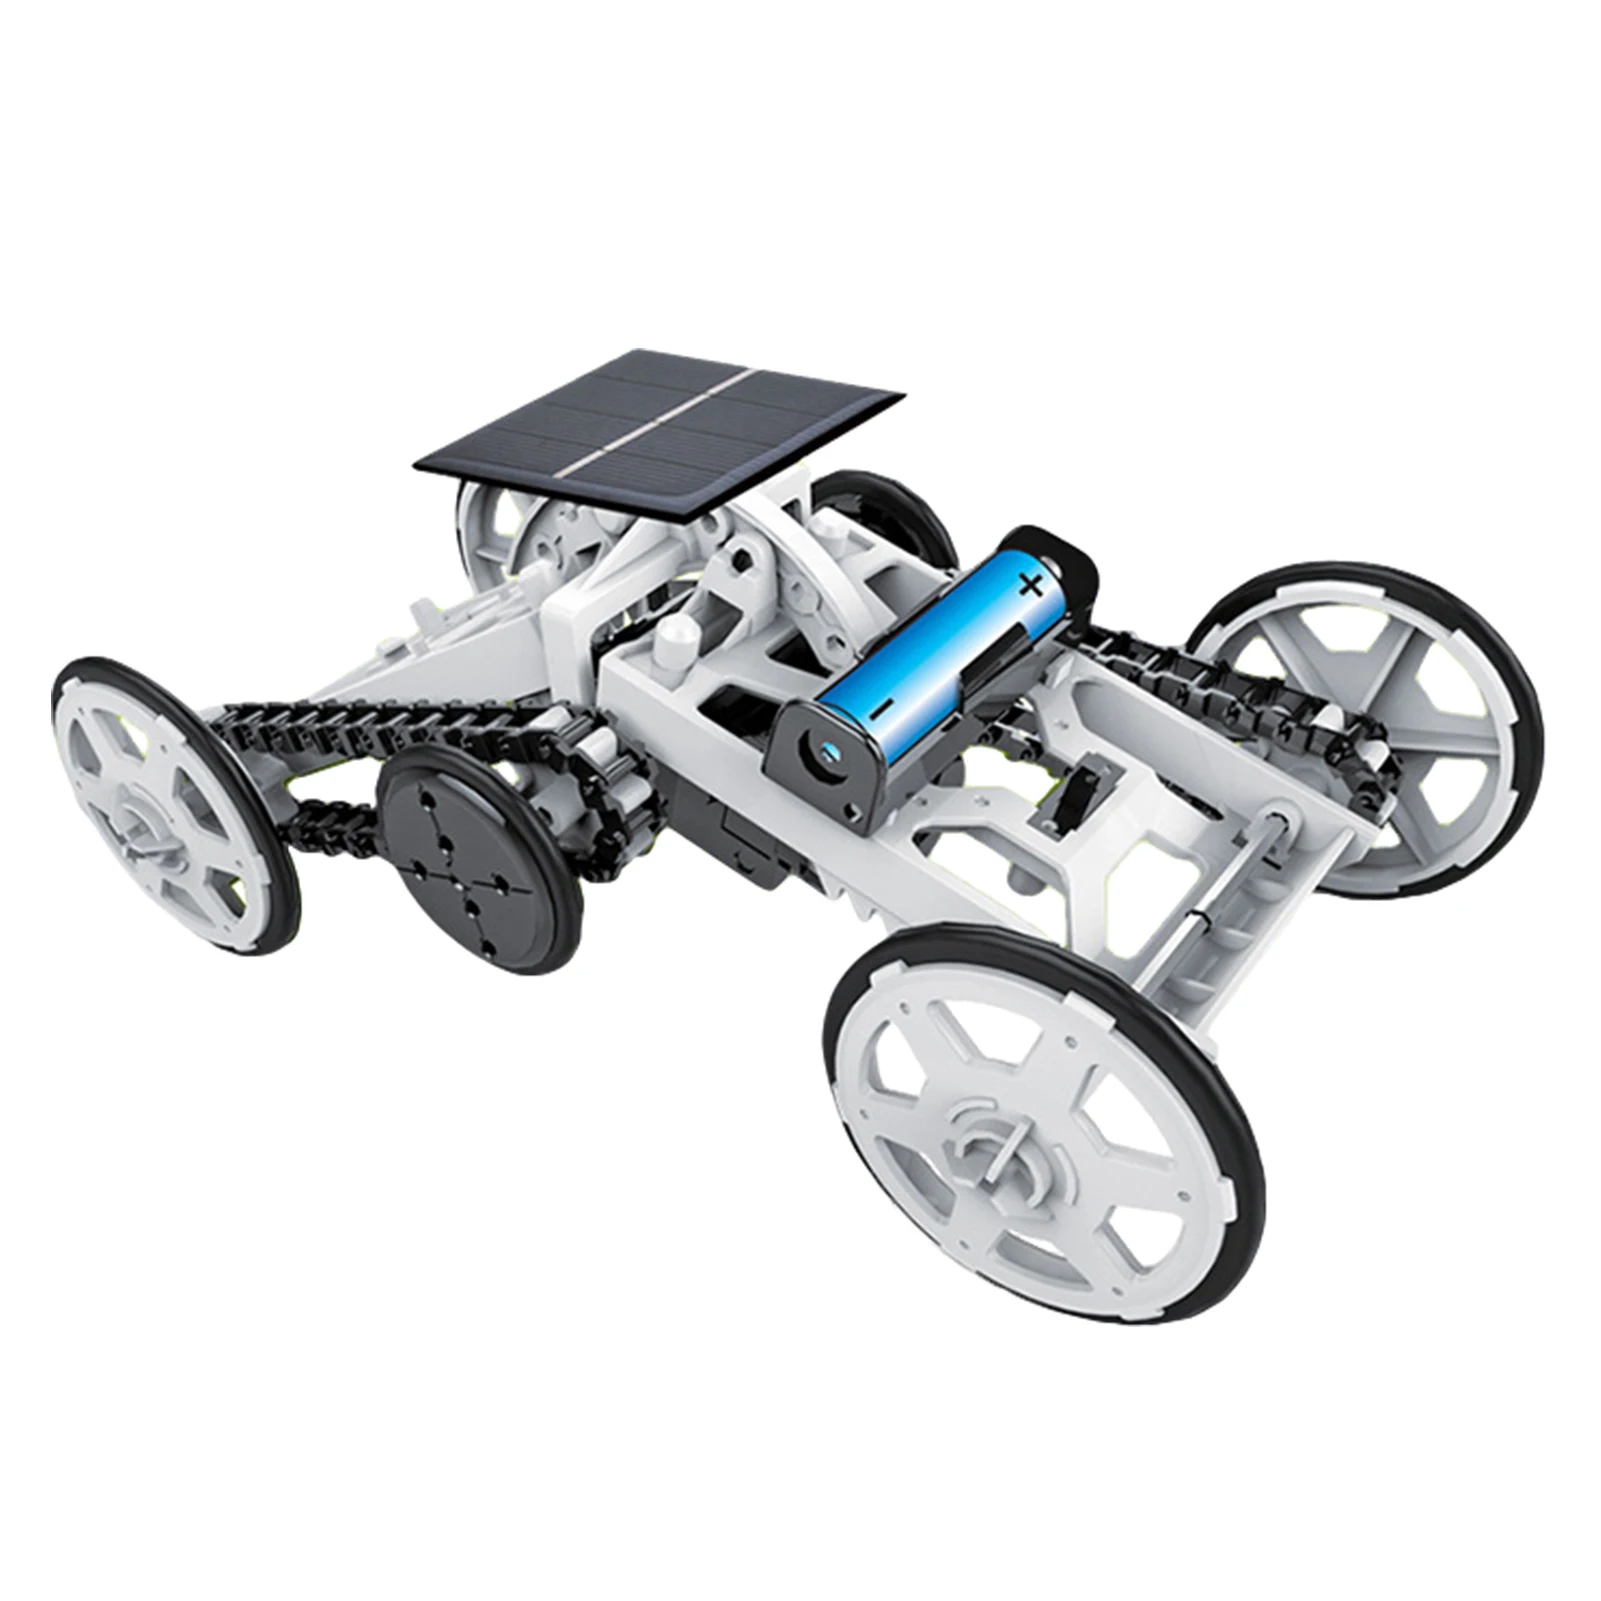 

Вынос руля игрушки DIY 4 колеса автомобиля Солнечный Energe развивающая Игрушечная модель W50